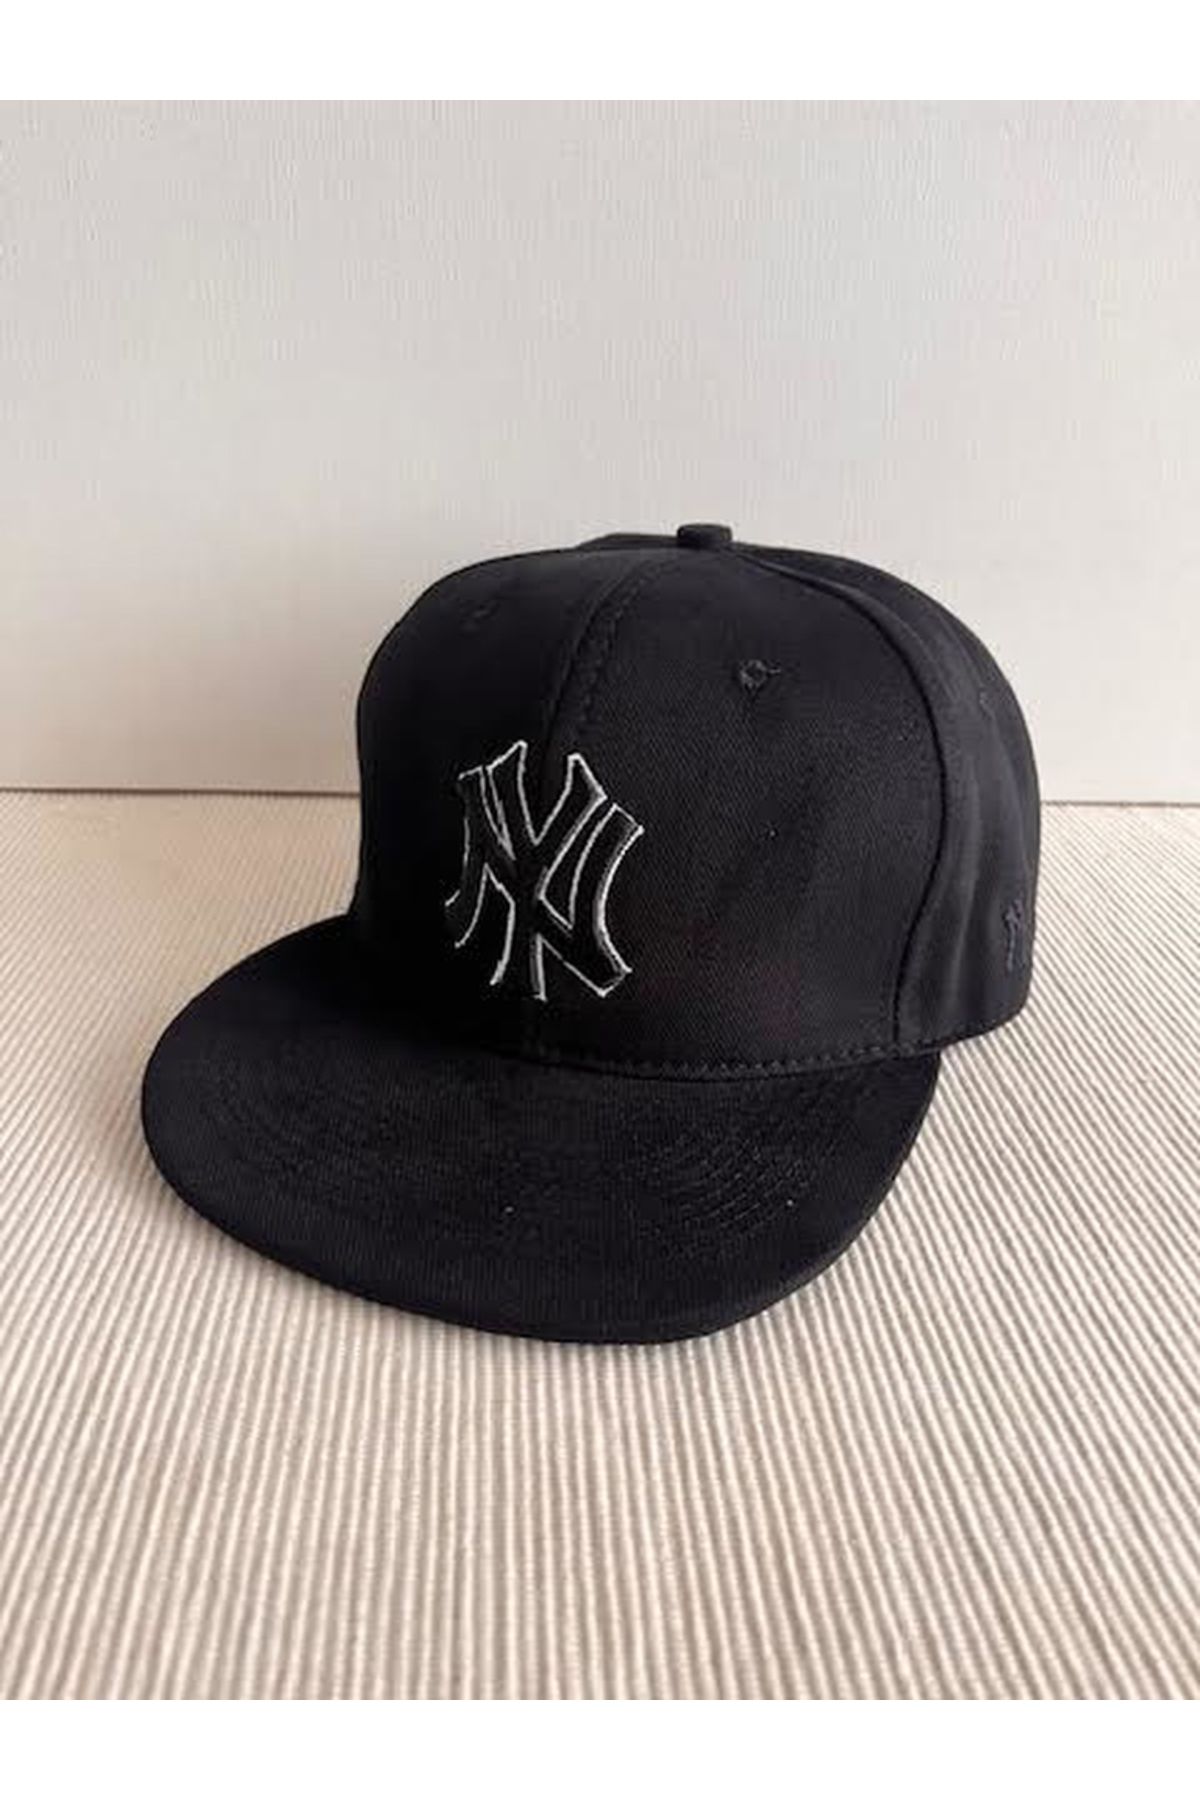 CosmoOutlet NY New York Nakışlı Arkasından Ayarlanabilir Unisex Kontürlü Siyah Renk Hip Hop Şapka